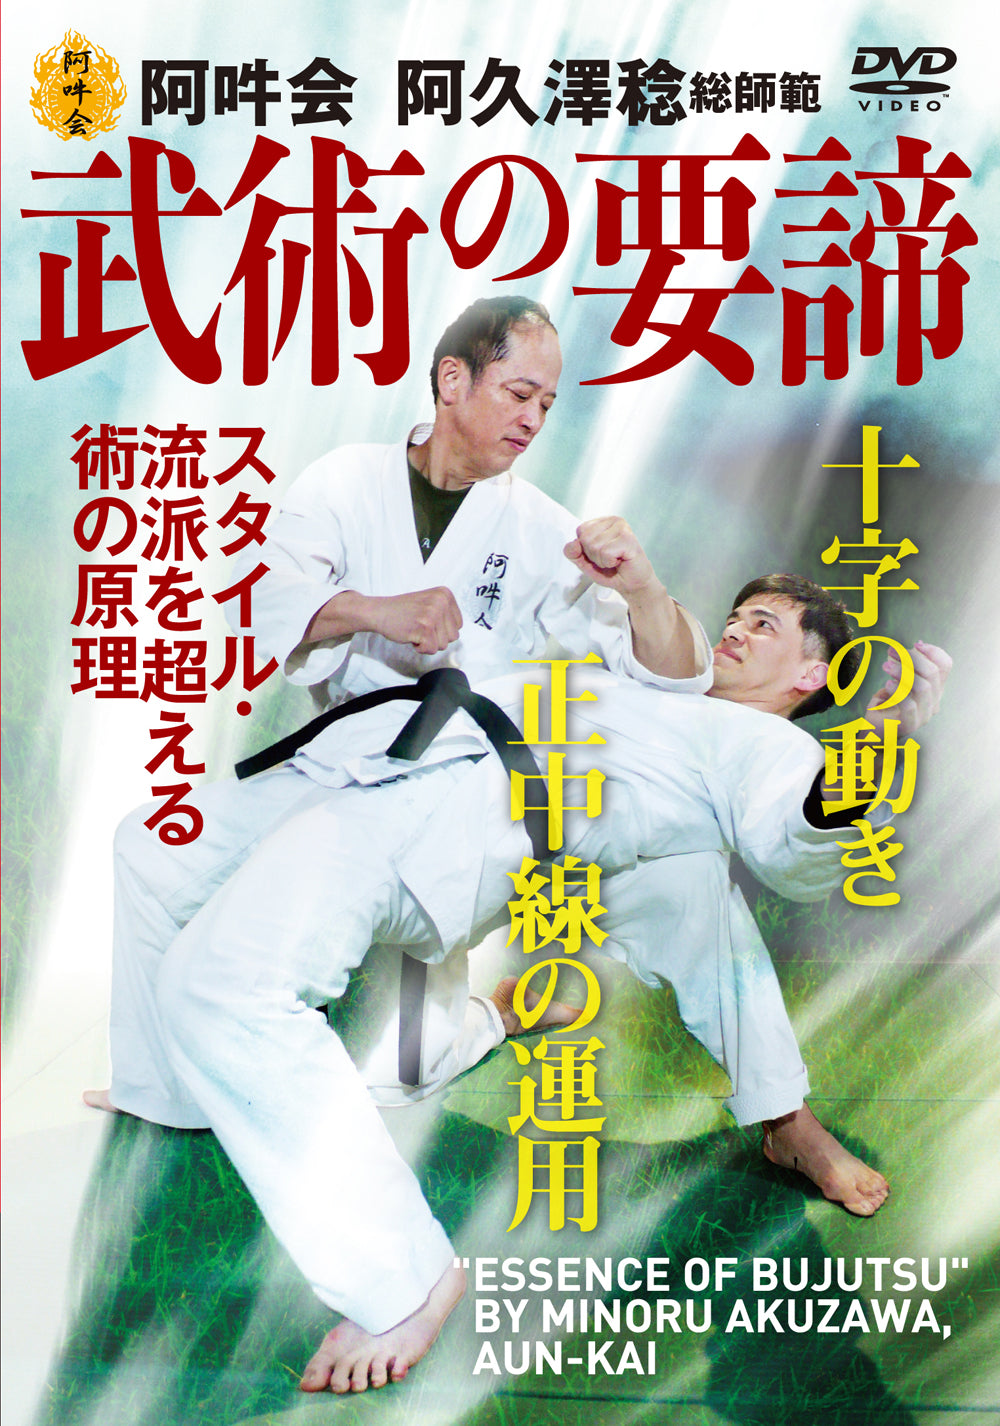 DVD Esencia de Bujutsu de Minoru Akuzawa de Aunkai